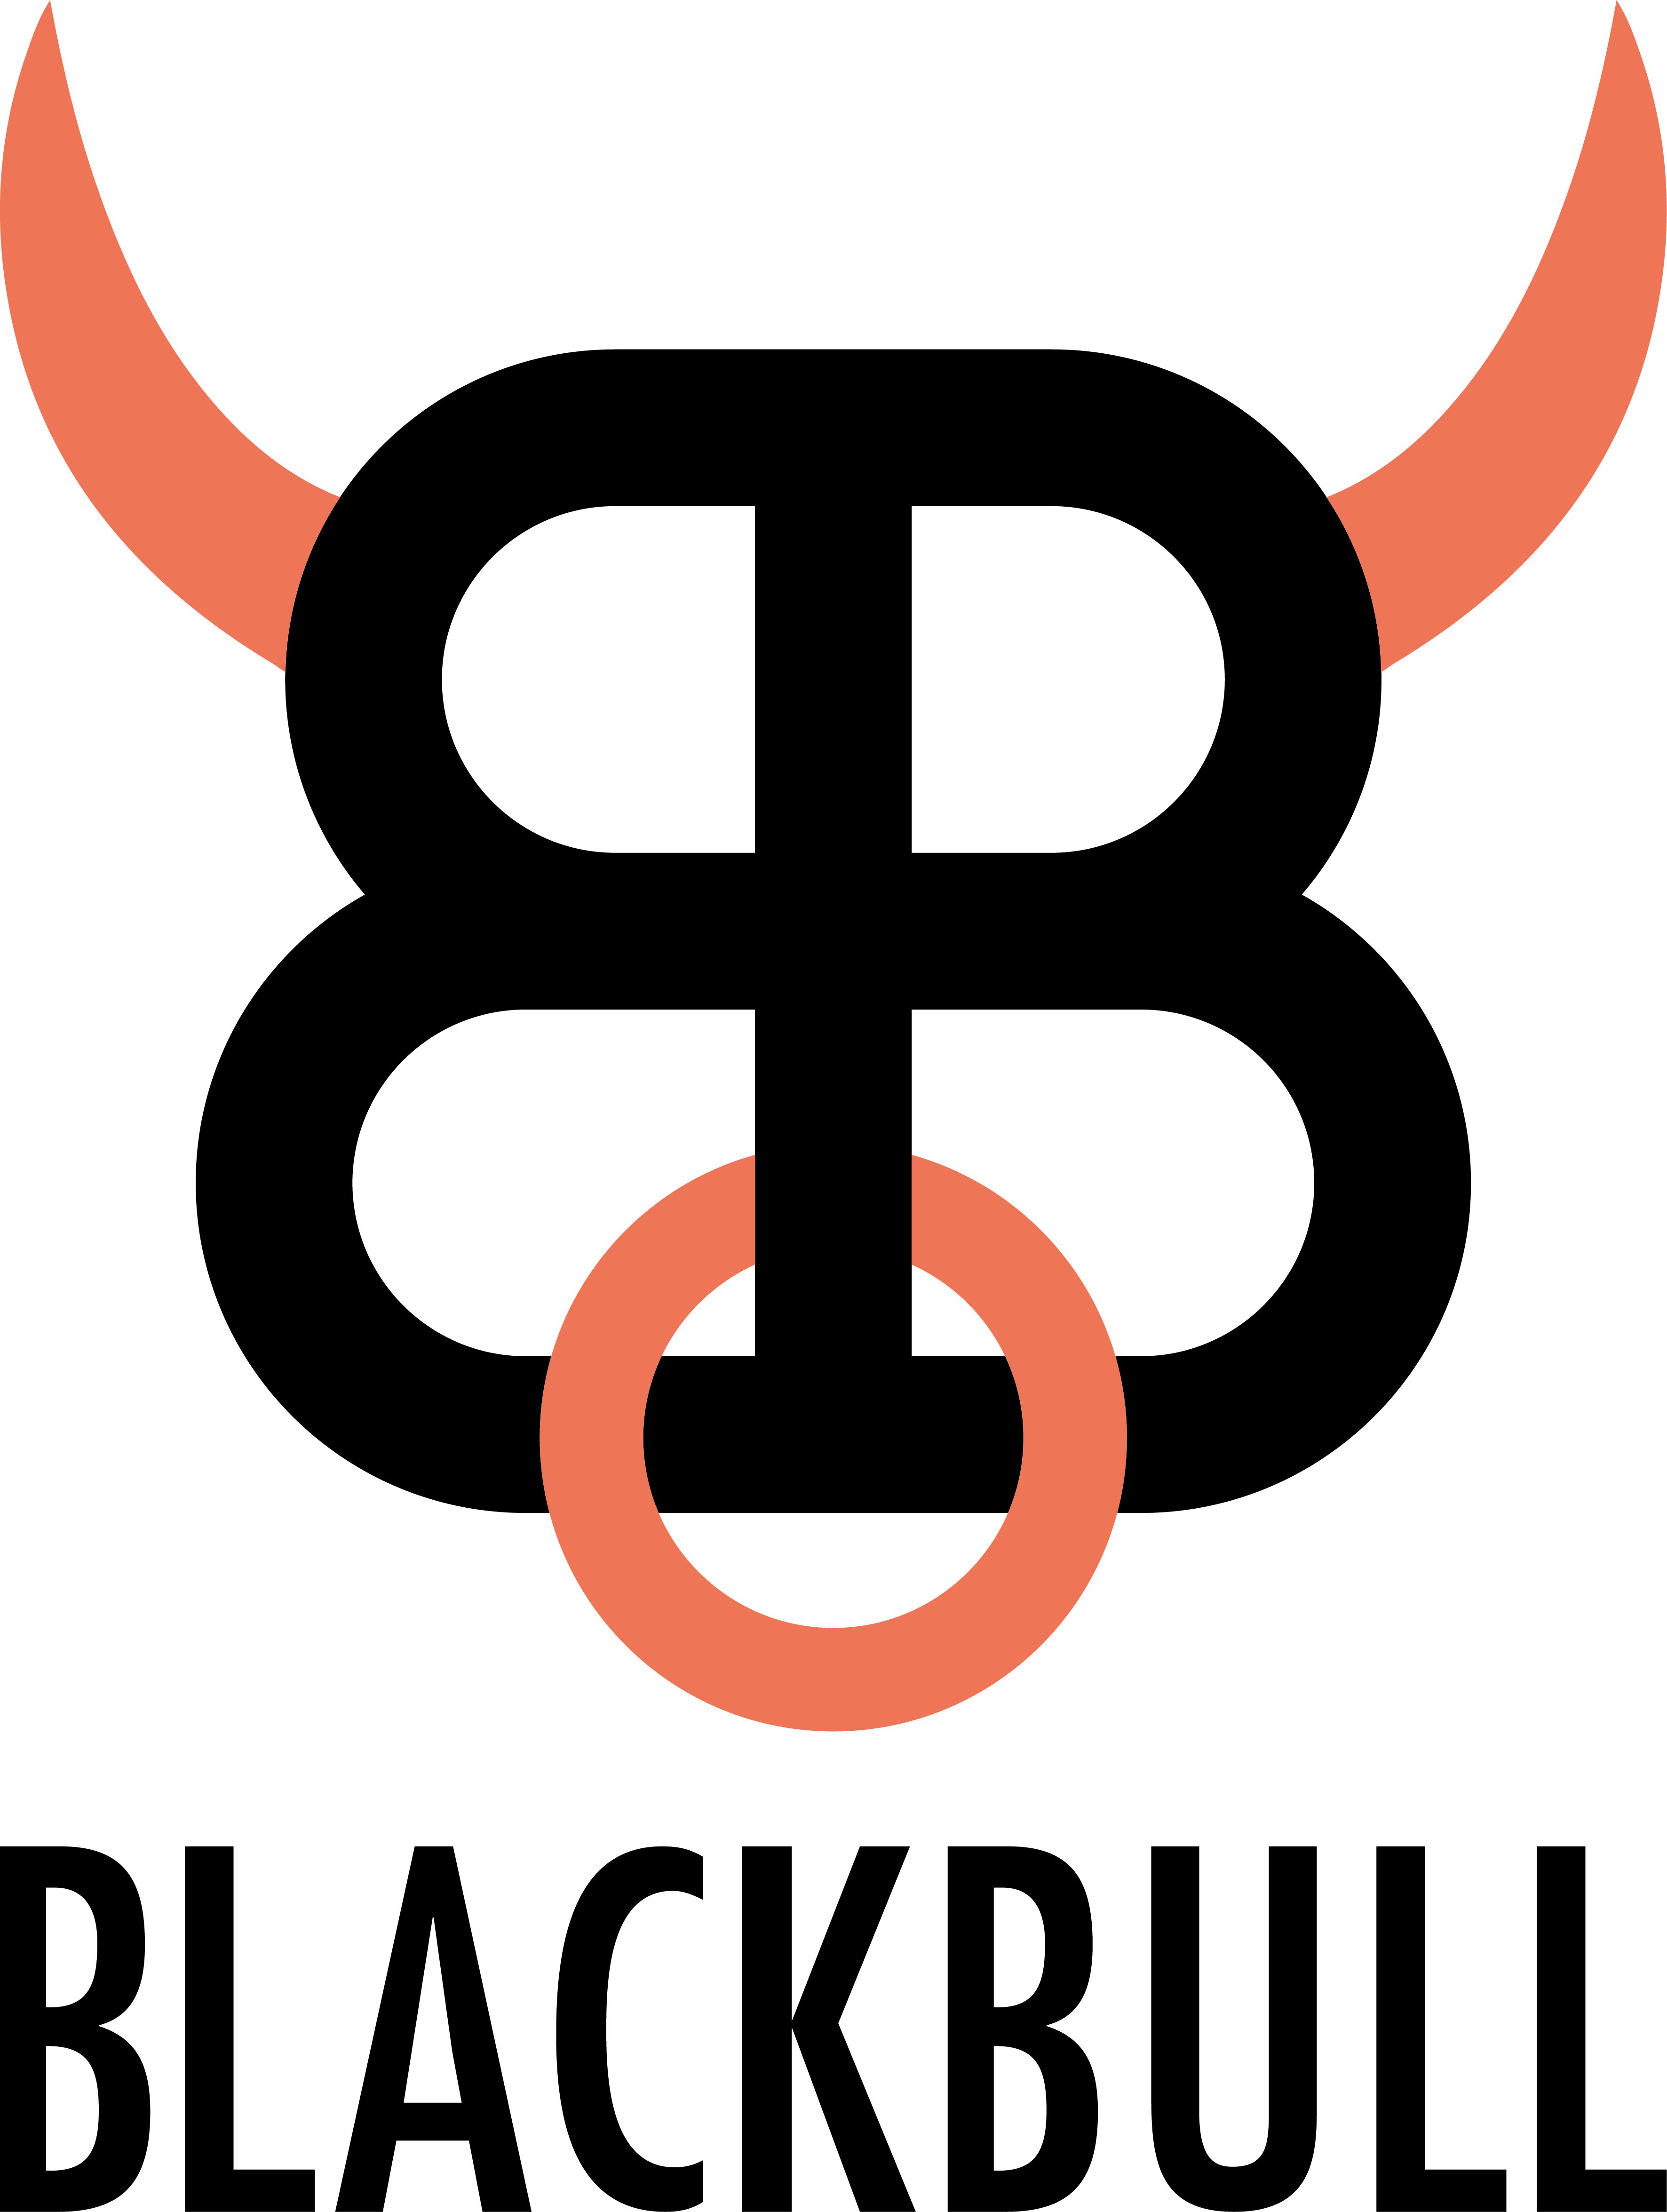 BlackBull